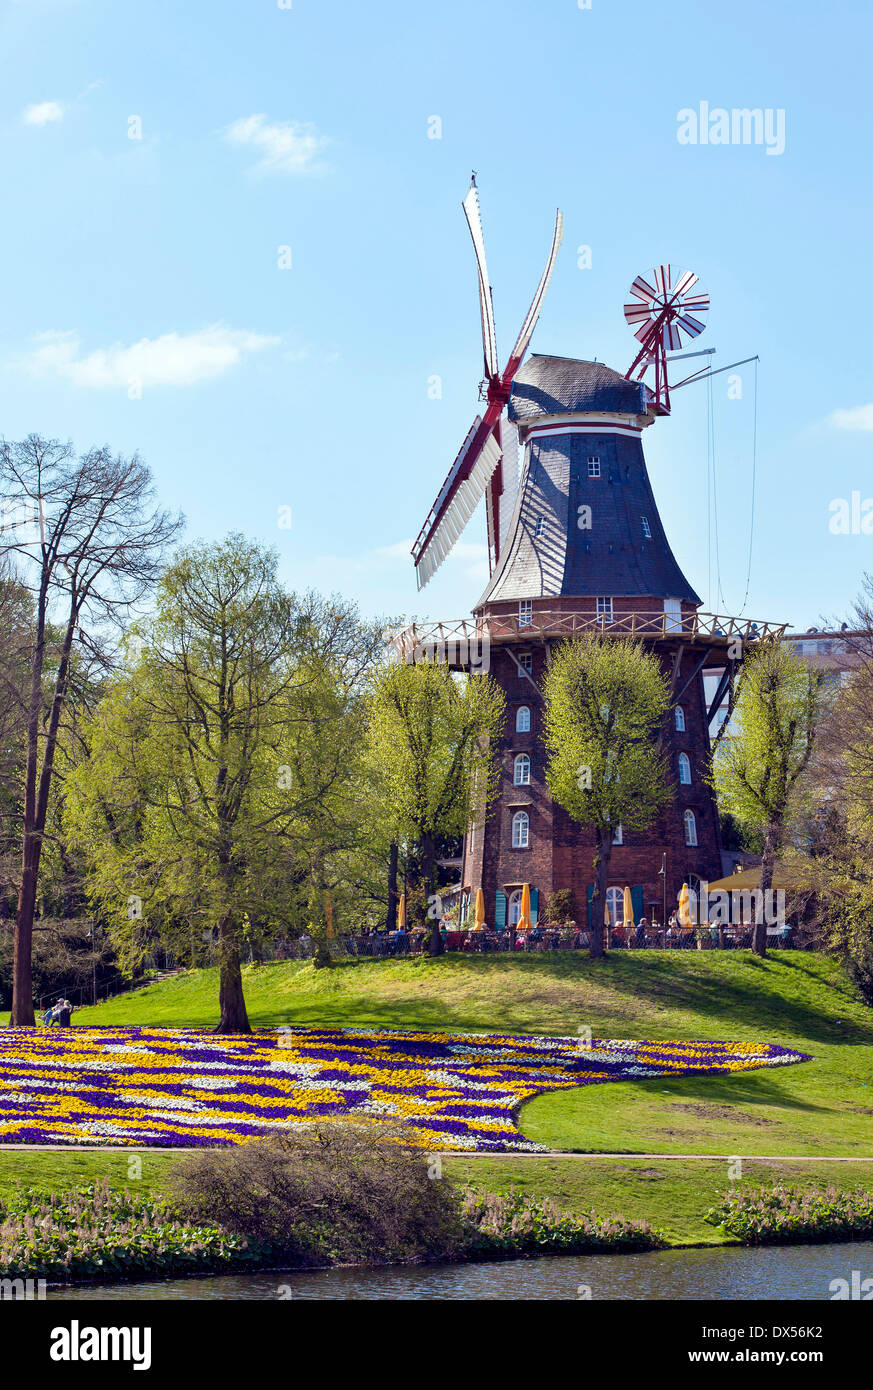 Ansgaritorsmühle oder Windmühle am Wall, an der Stadtmauer von Bremen, historische Windmühle, Bremen, Deutschland Stockfoto